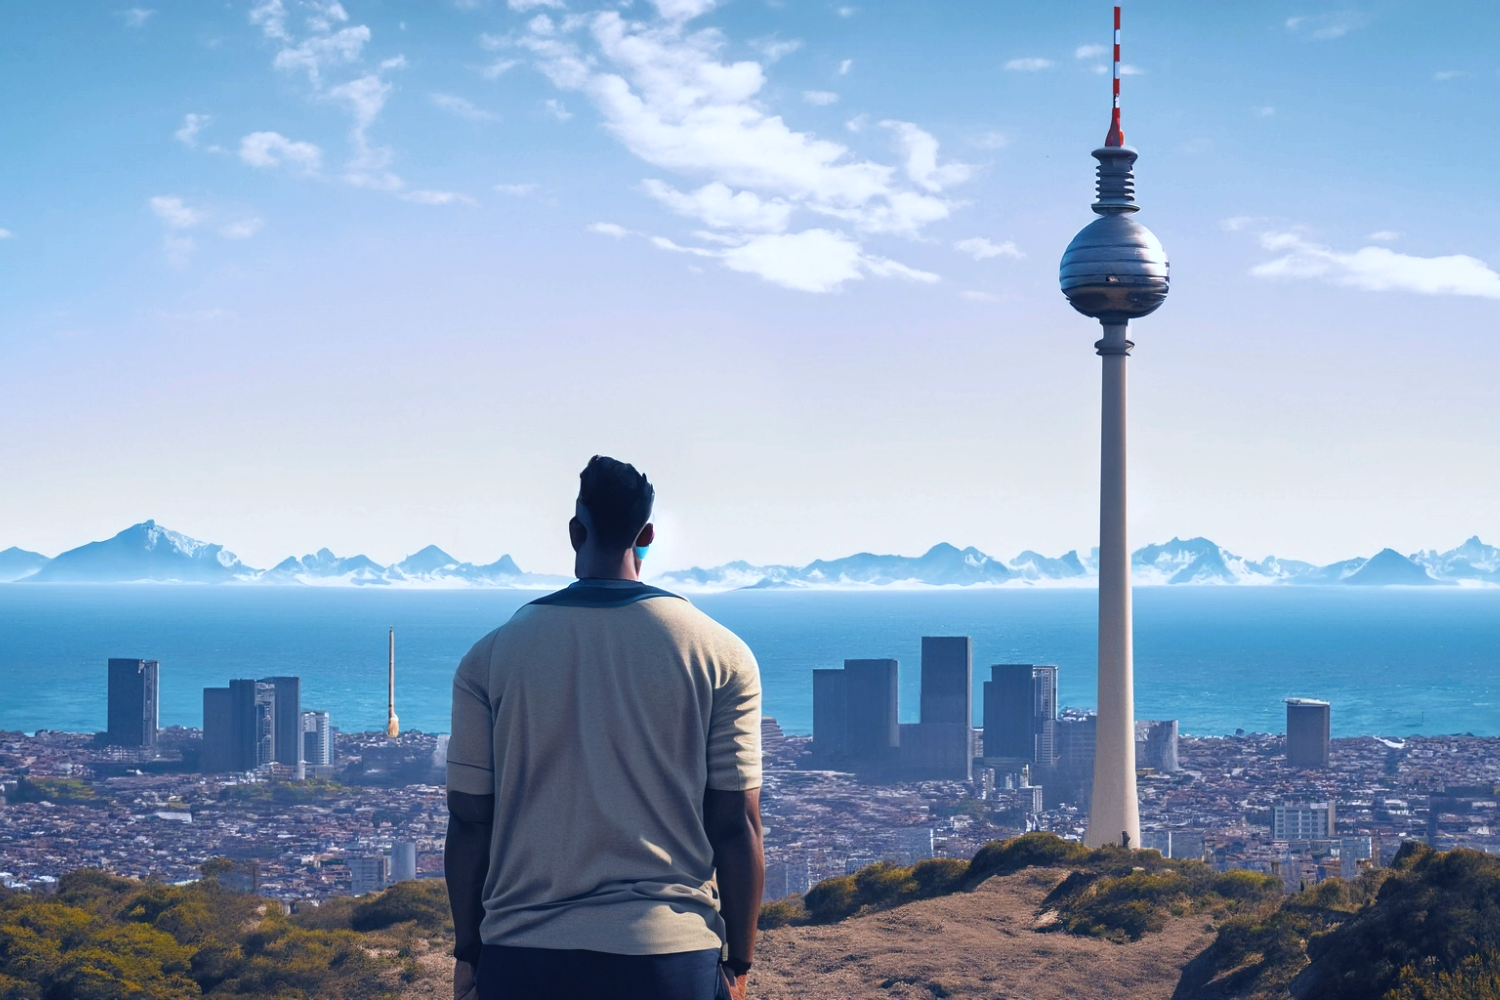 AI-generiertes Bild: Ein Mensch blickt auf eine Landschatt aus Stadt, Meer und Bergen, aus denen der Berliner Fernsehturm ragt.